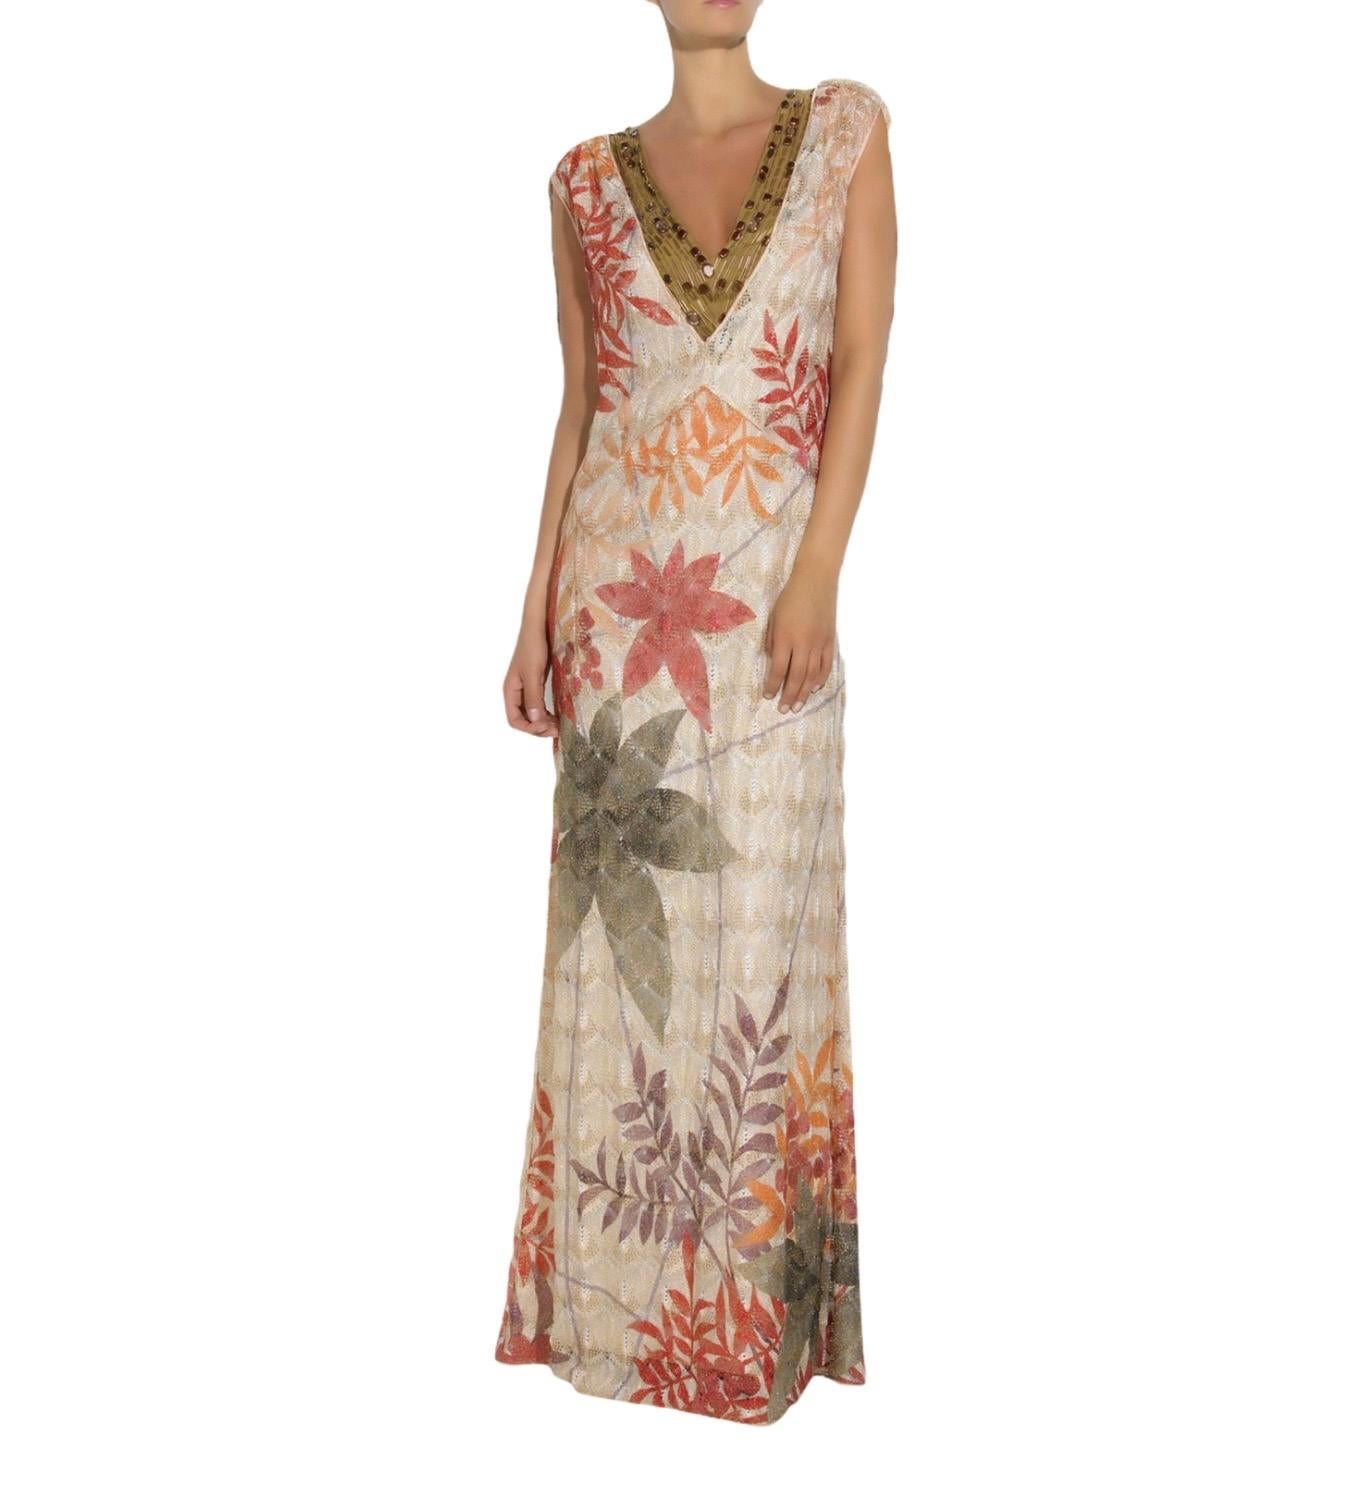 La robe en maille multicolore de Missoni est une pièce d'investissement sensationnelle, remarquez l'imprimé botanique audacieux et l'encolure perlée spectaculaire. Ce modèle luxueux et sans effort ne nécessite que peu d'ornements. Il suffit